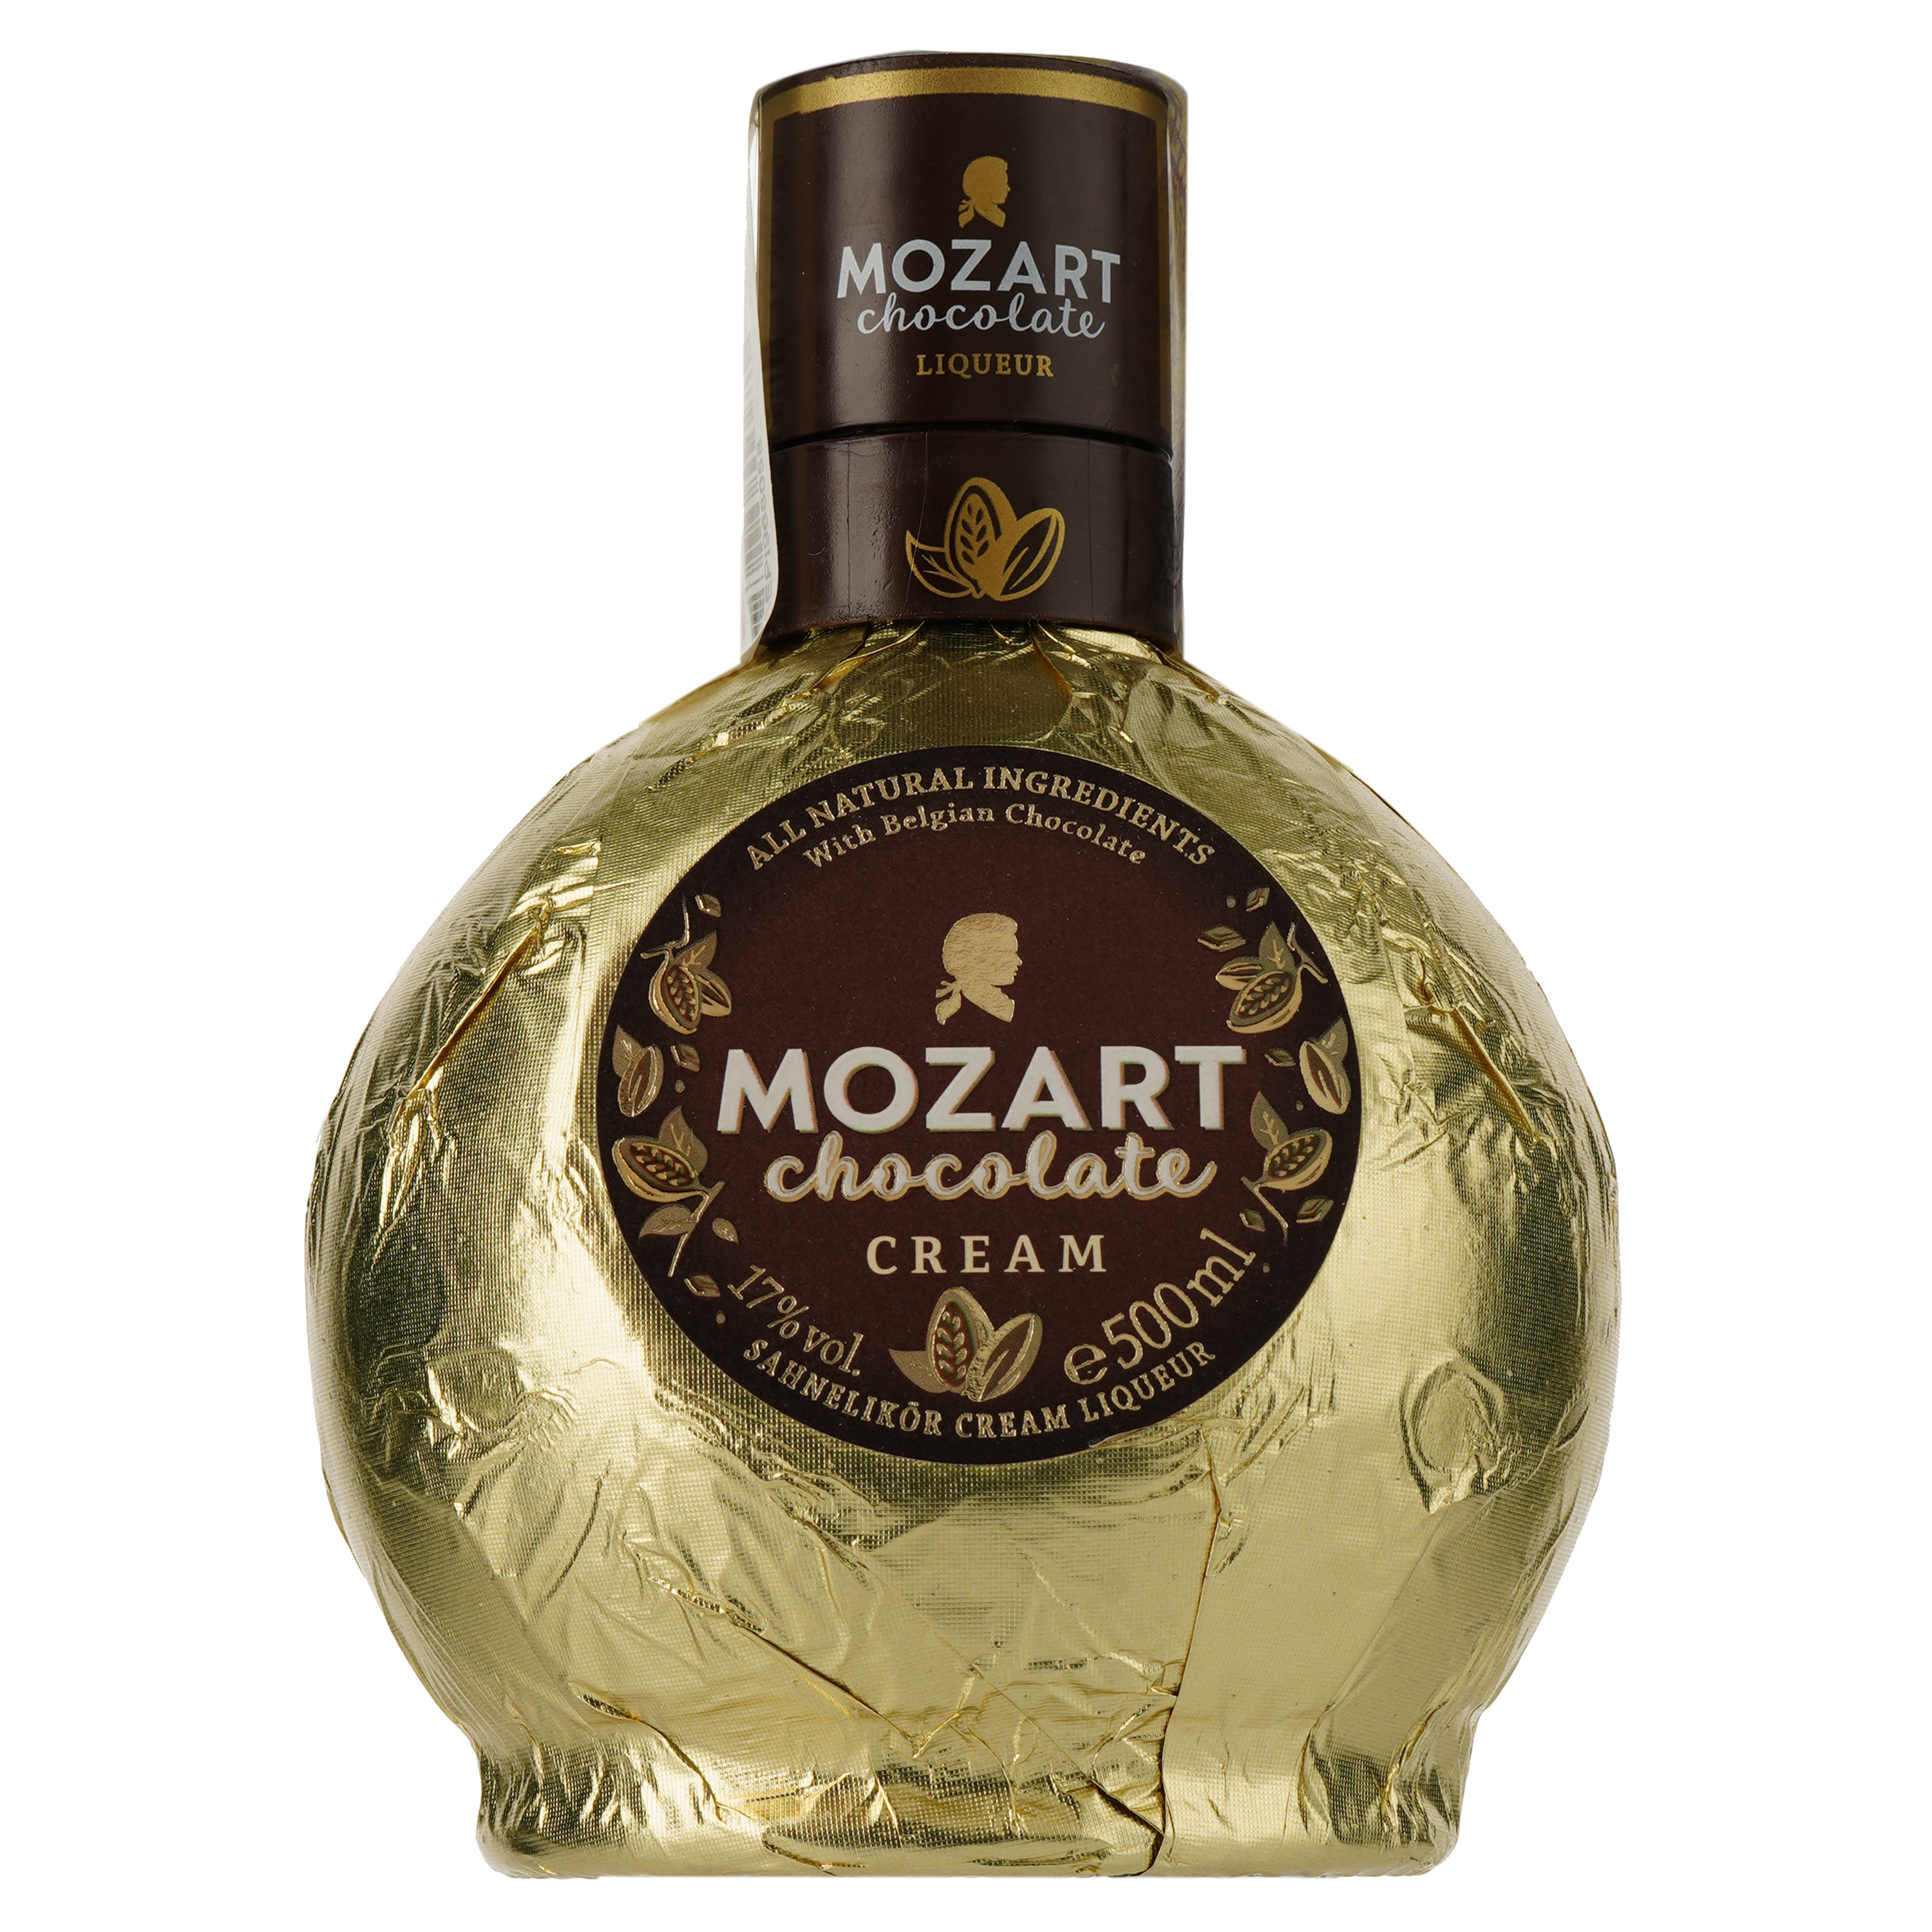 Ликер Mozart Chocolate Cream Gold, в подарочной упаковке, с бокалом, 17%, 0,5 л - фото 3